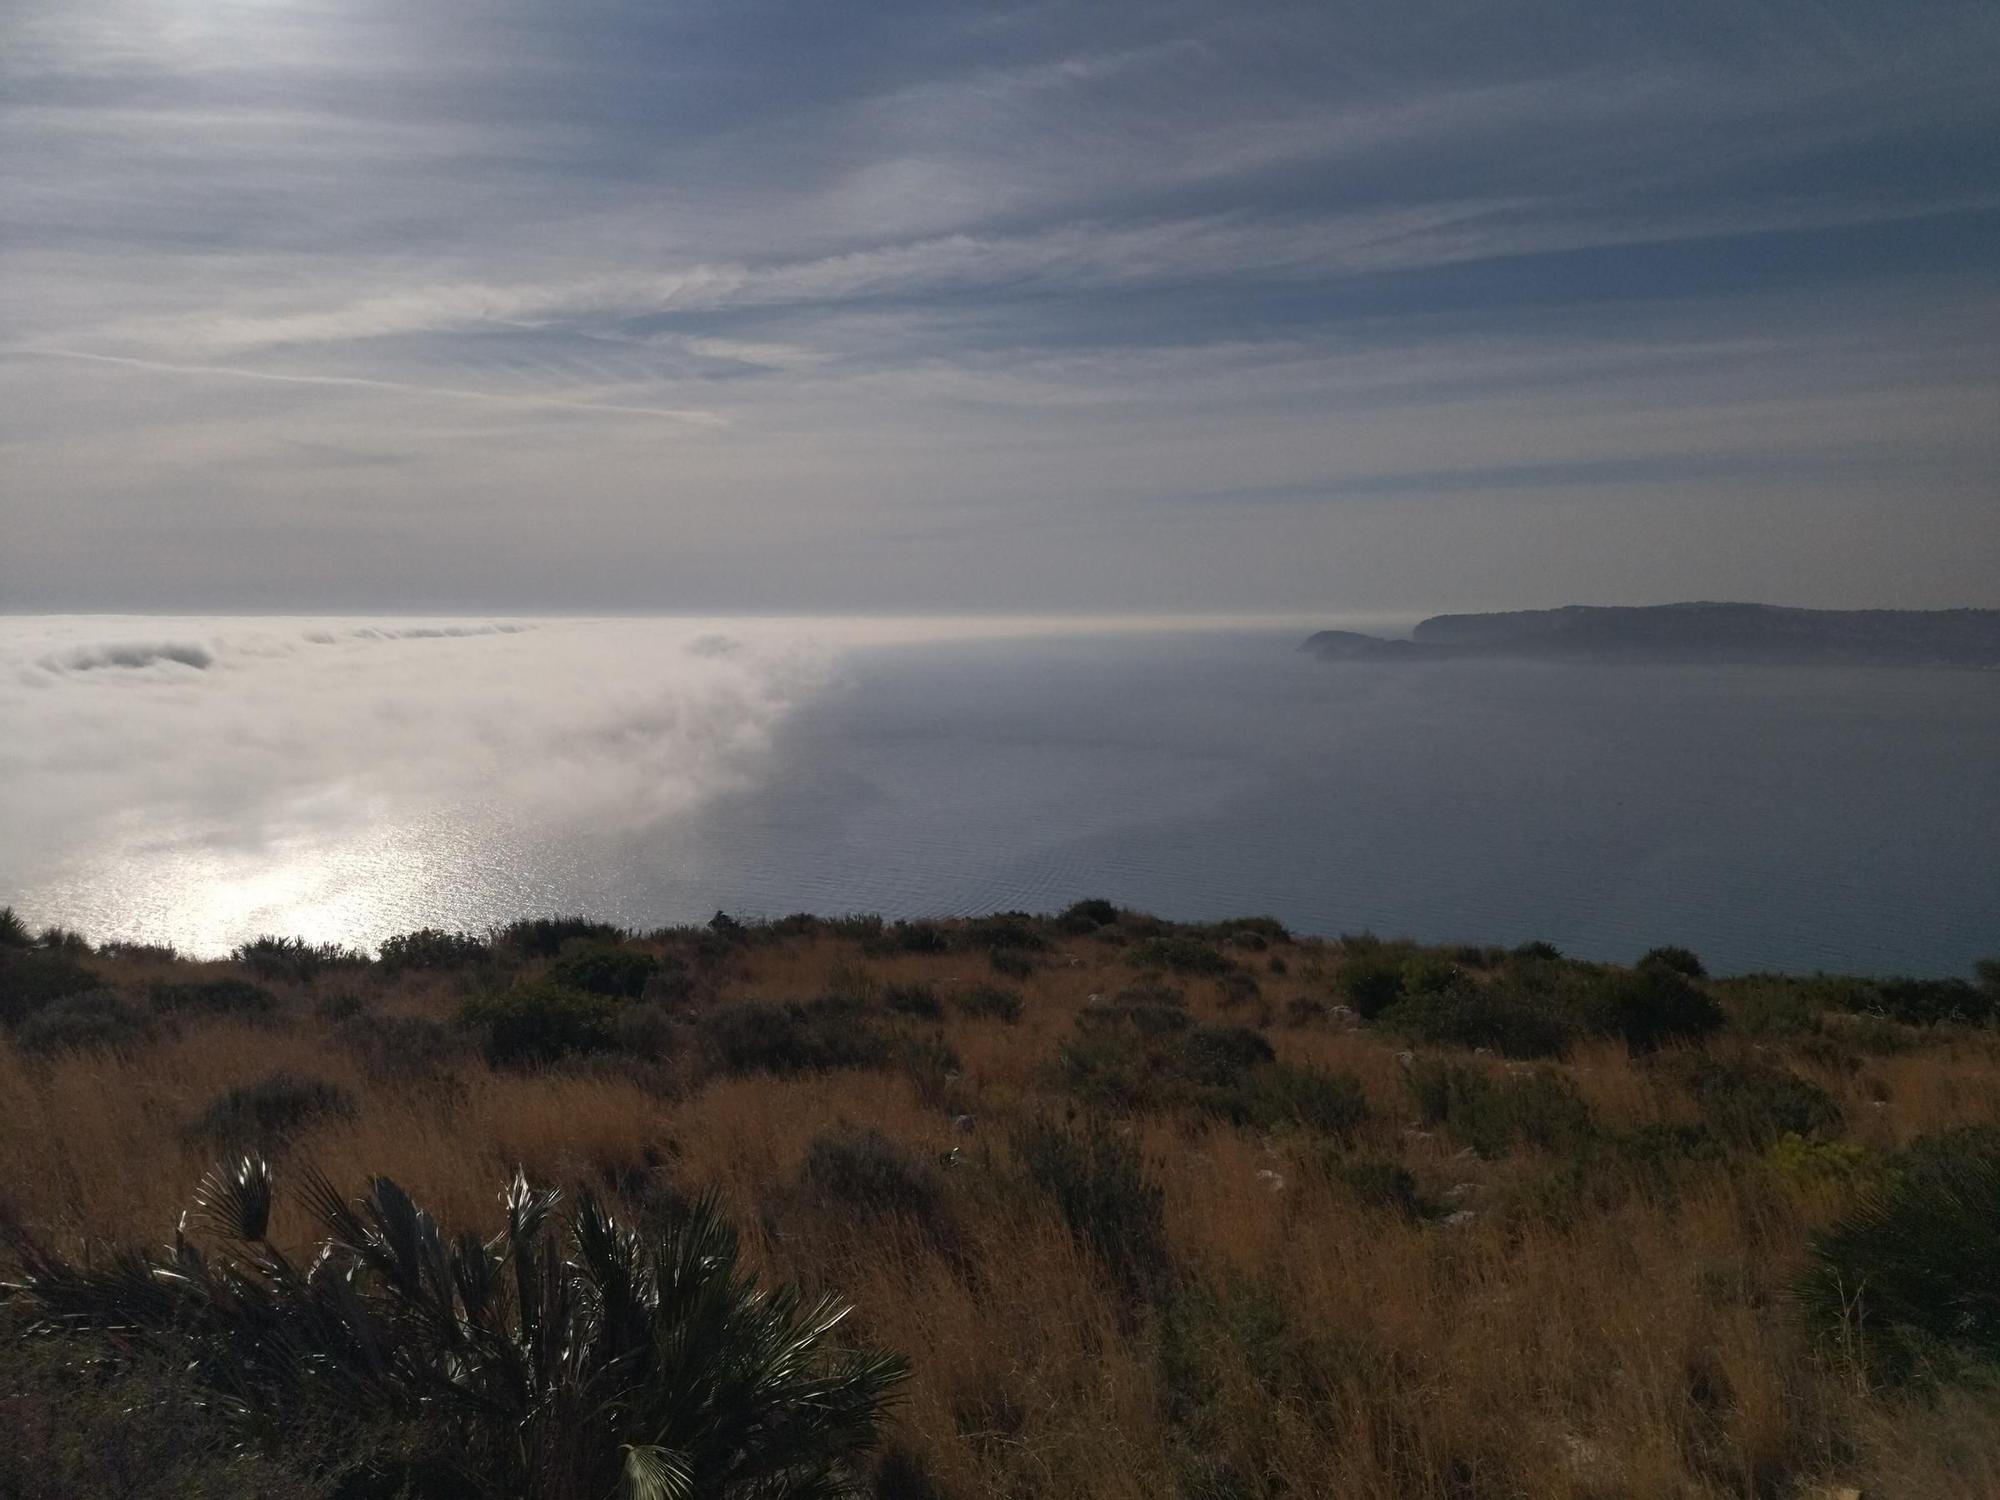 La niebla, desde el cabo de Sant Antoni (imágenes)